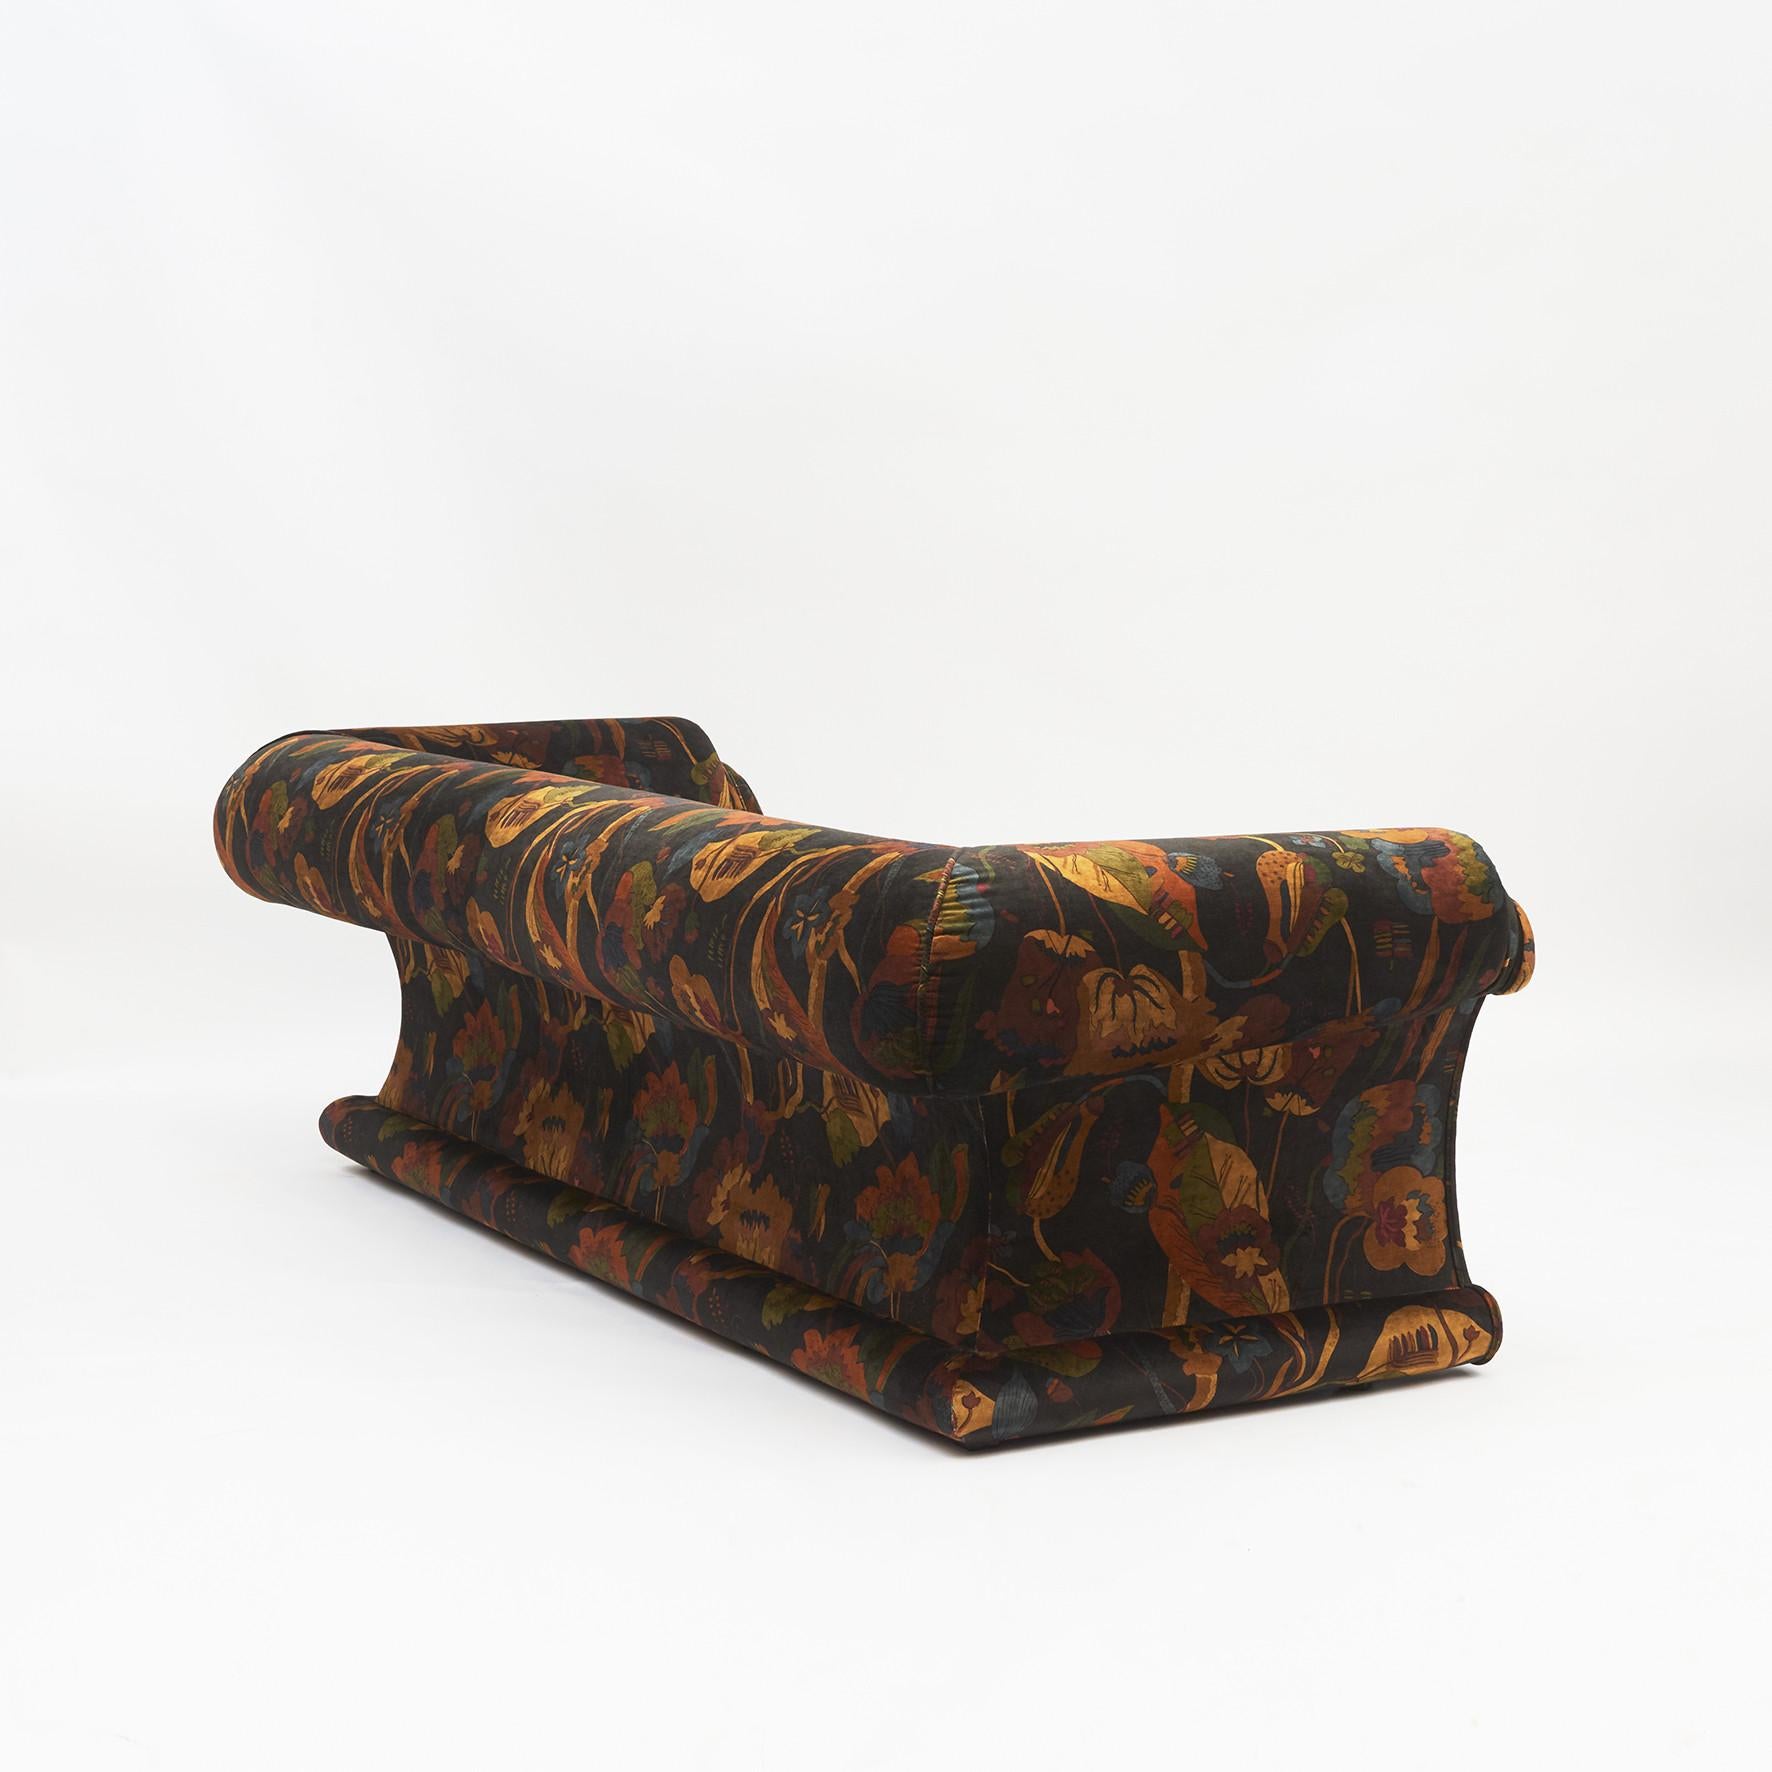 Modern Elegant Italian Design Sofa Free Standing. Printed velvet Fabric For Sale